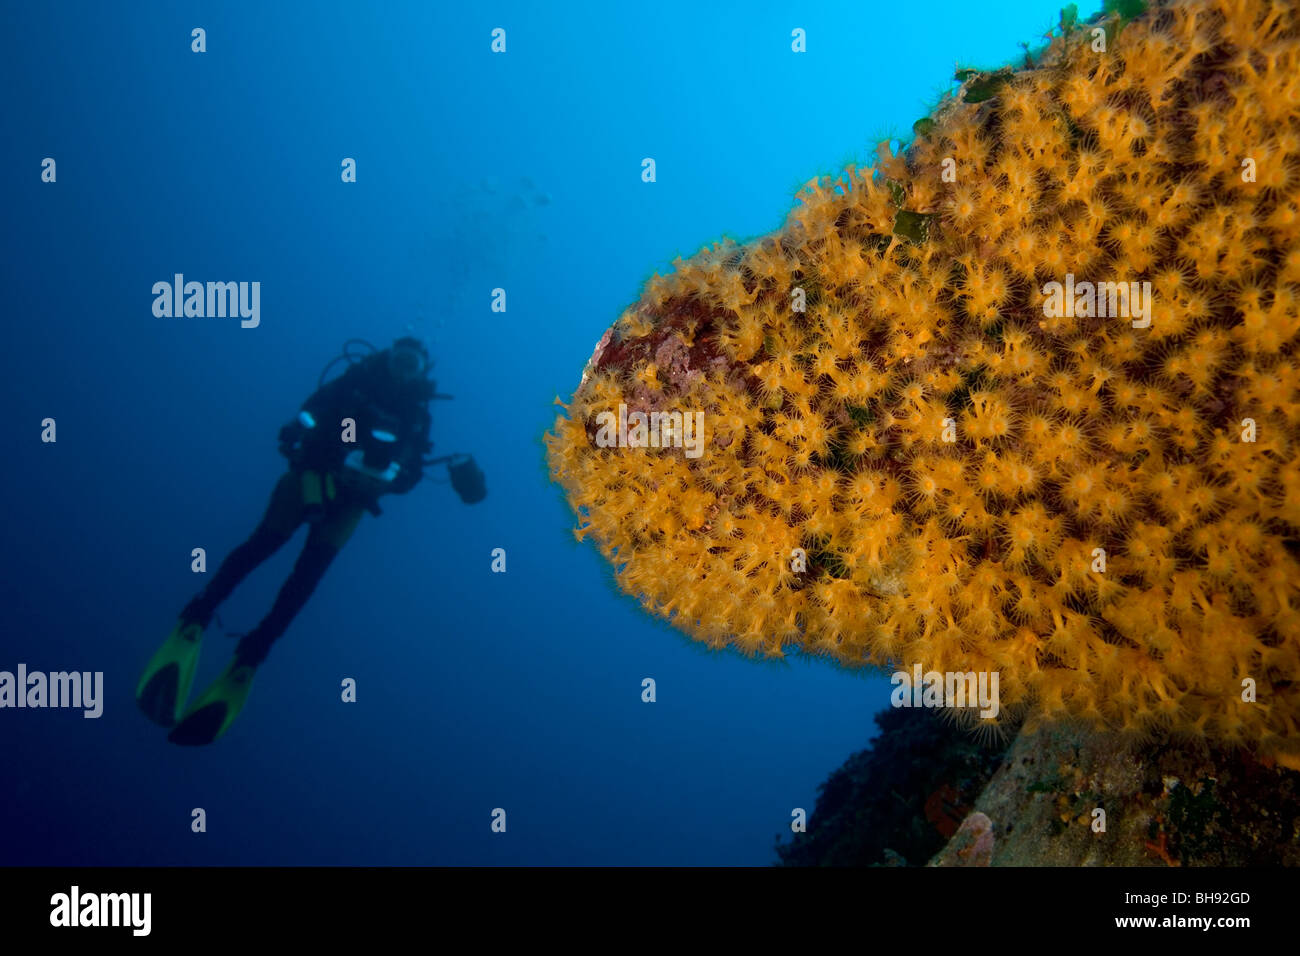 Scuba Diver e Rock coperto con Zoanthids, Parazoanthus axinellae, Isola del Giglio, Mare Mediterraneo, Italia Foto Stock